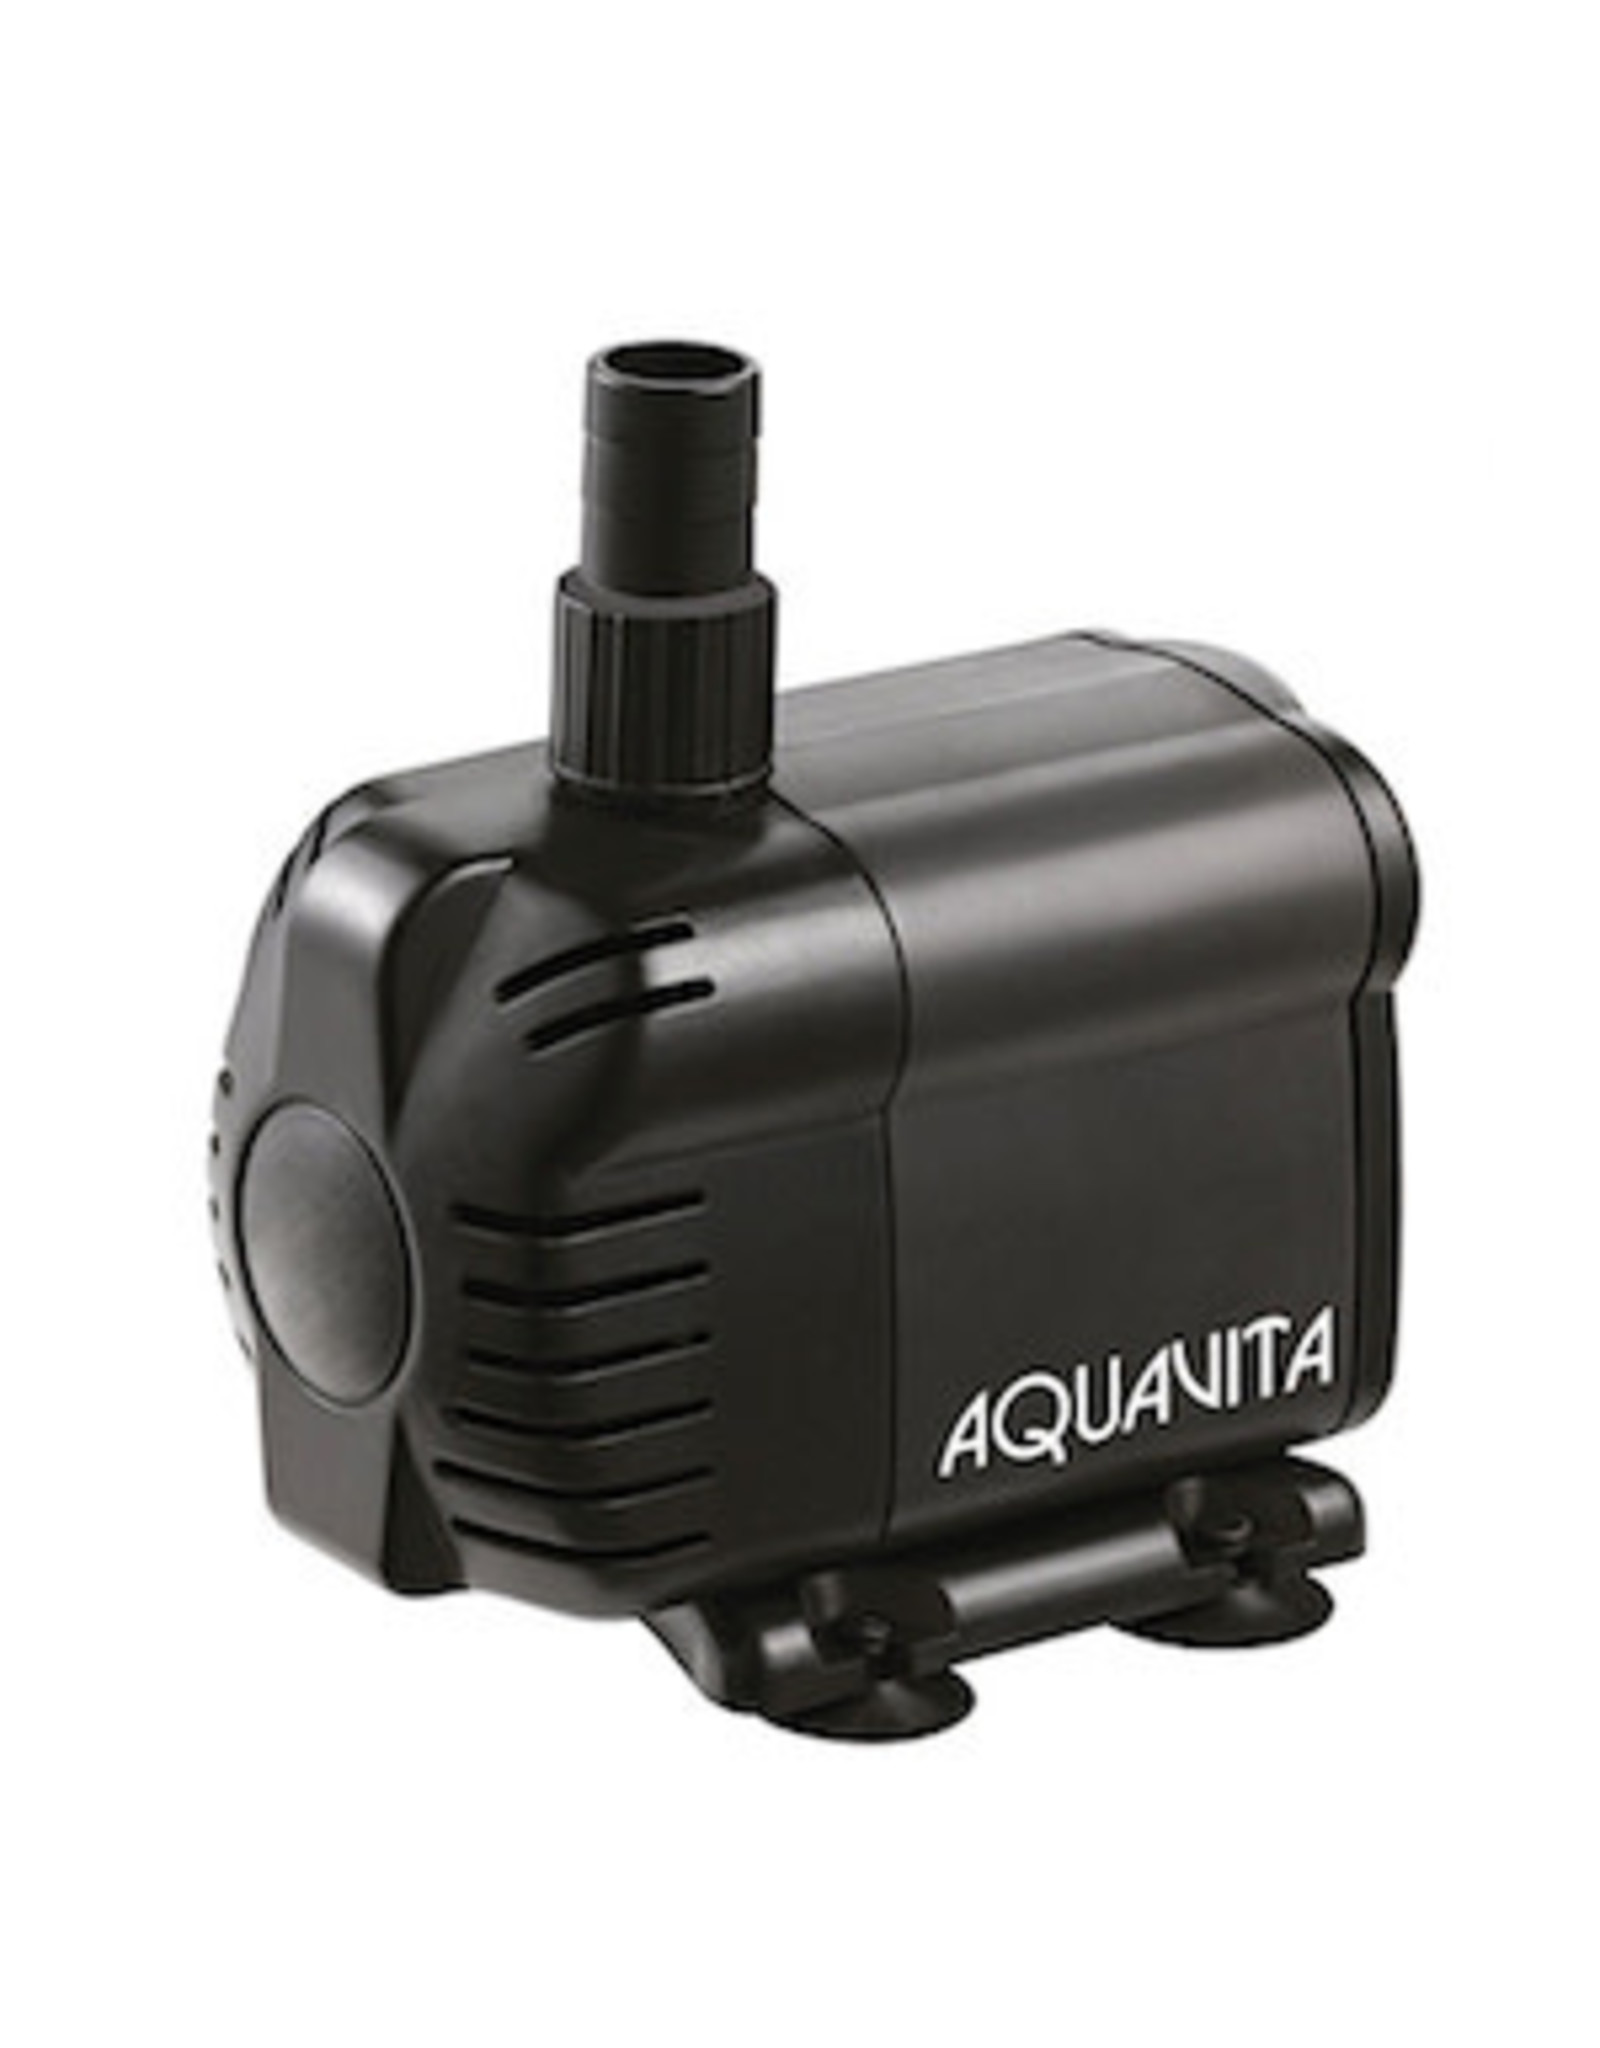 Aqua Vita AquaVita 159 Water Pump